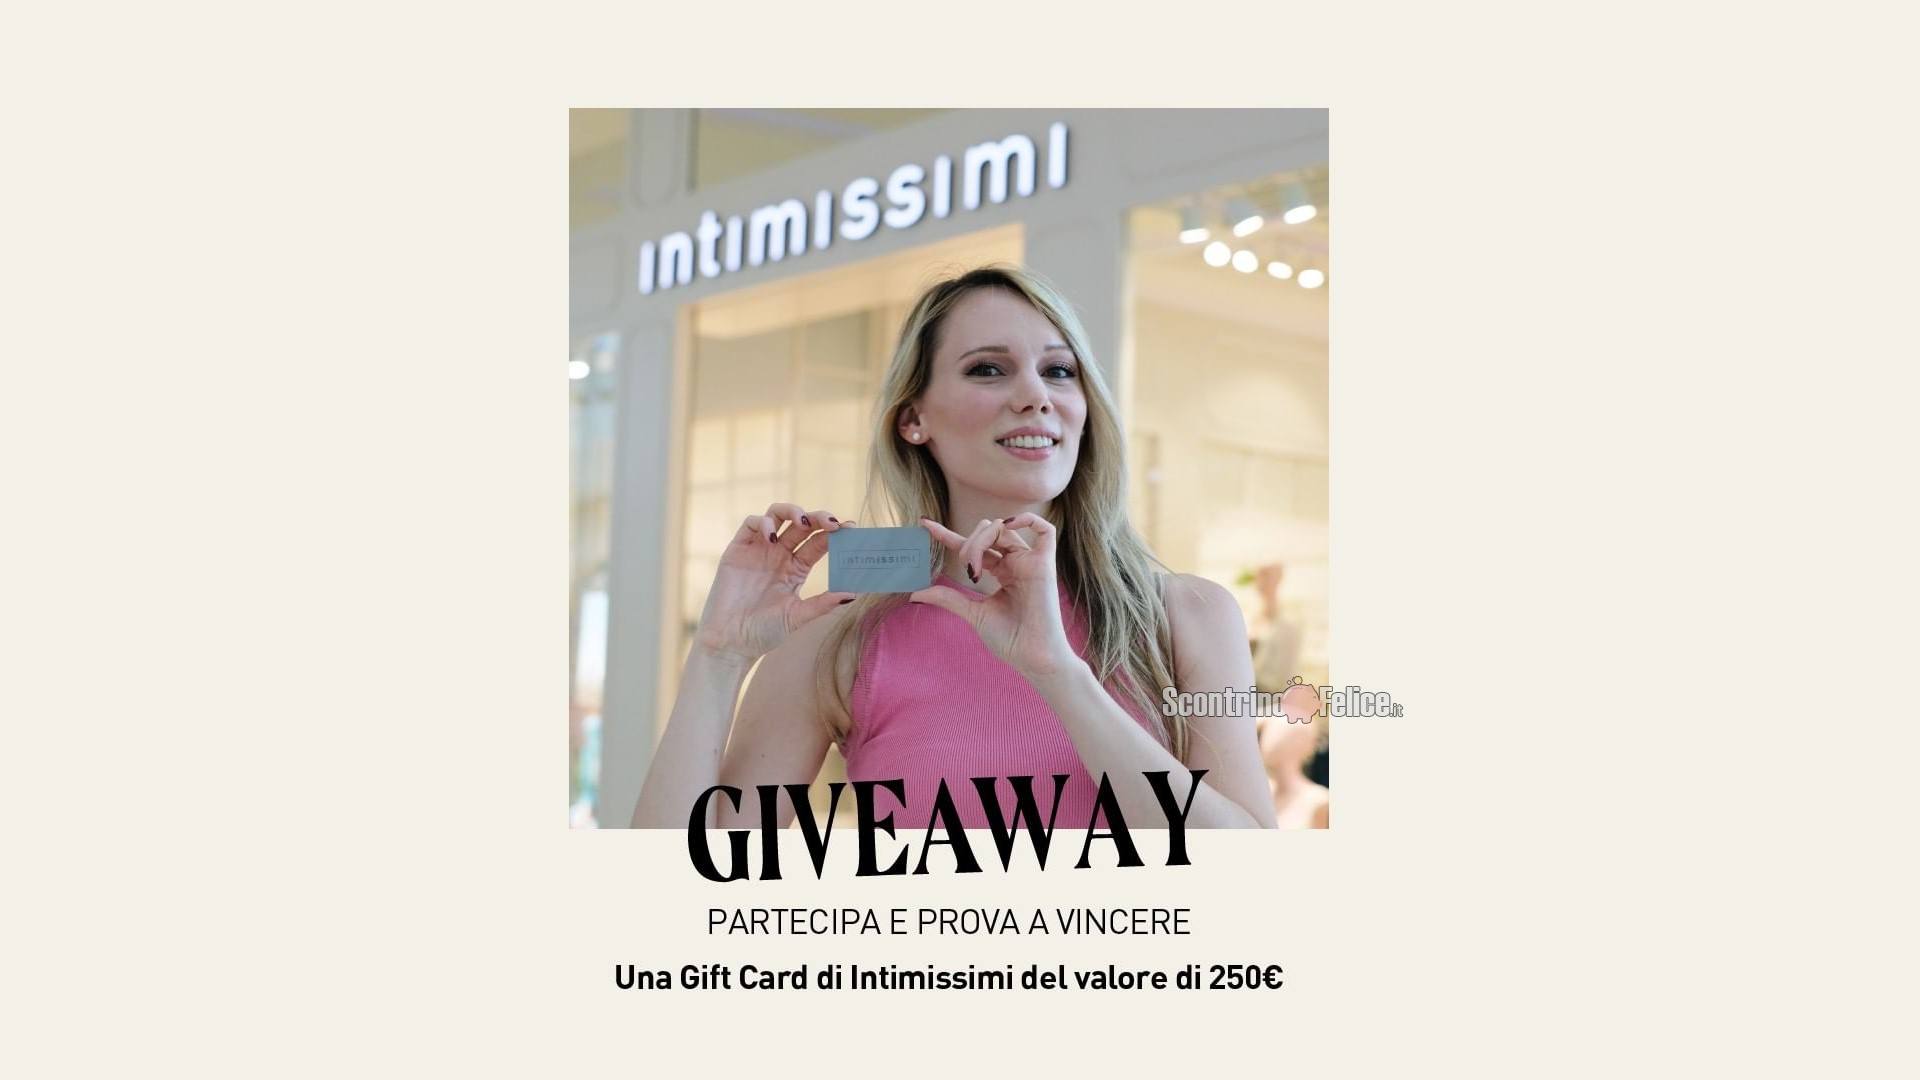 Vinci GRATIS 1 Gift Card Intimissimi da 250€ con Nave De Vero